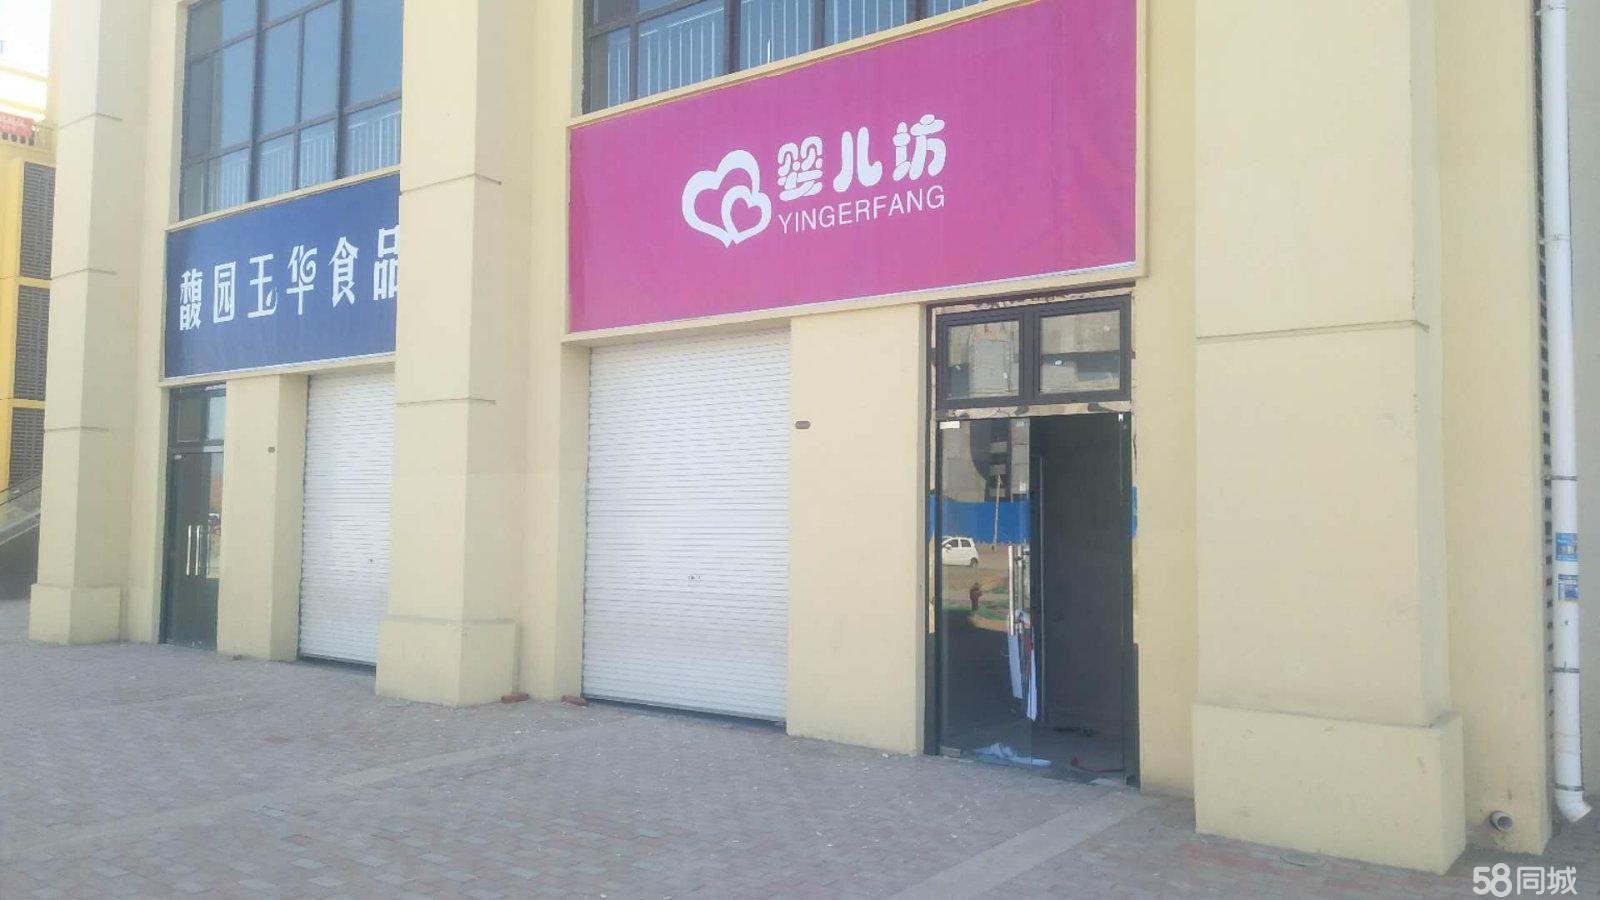 (出租) 出租阳谷侨润街道商业街店铺